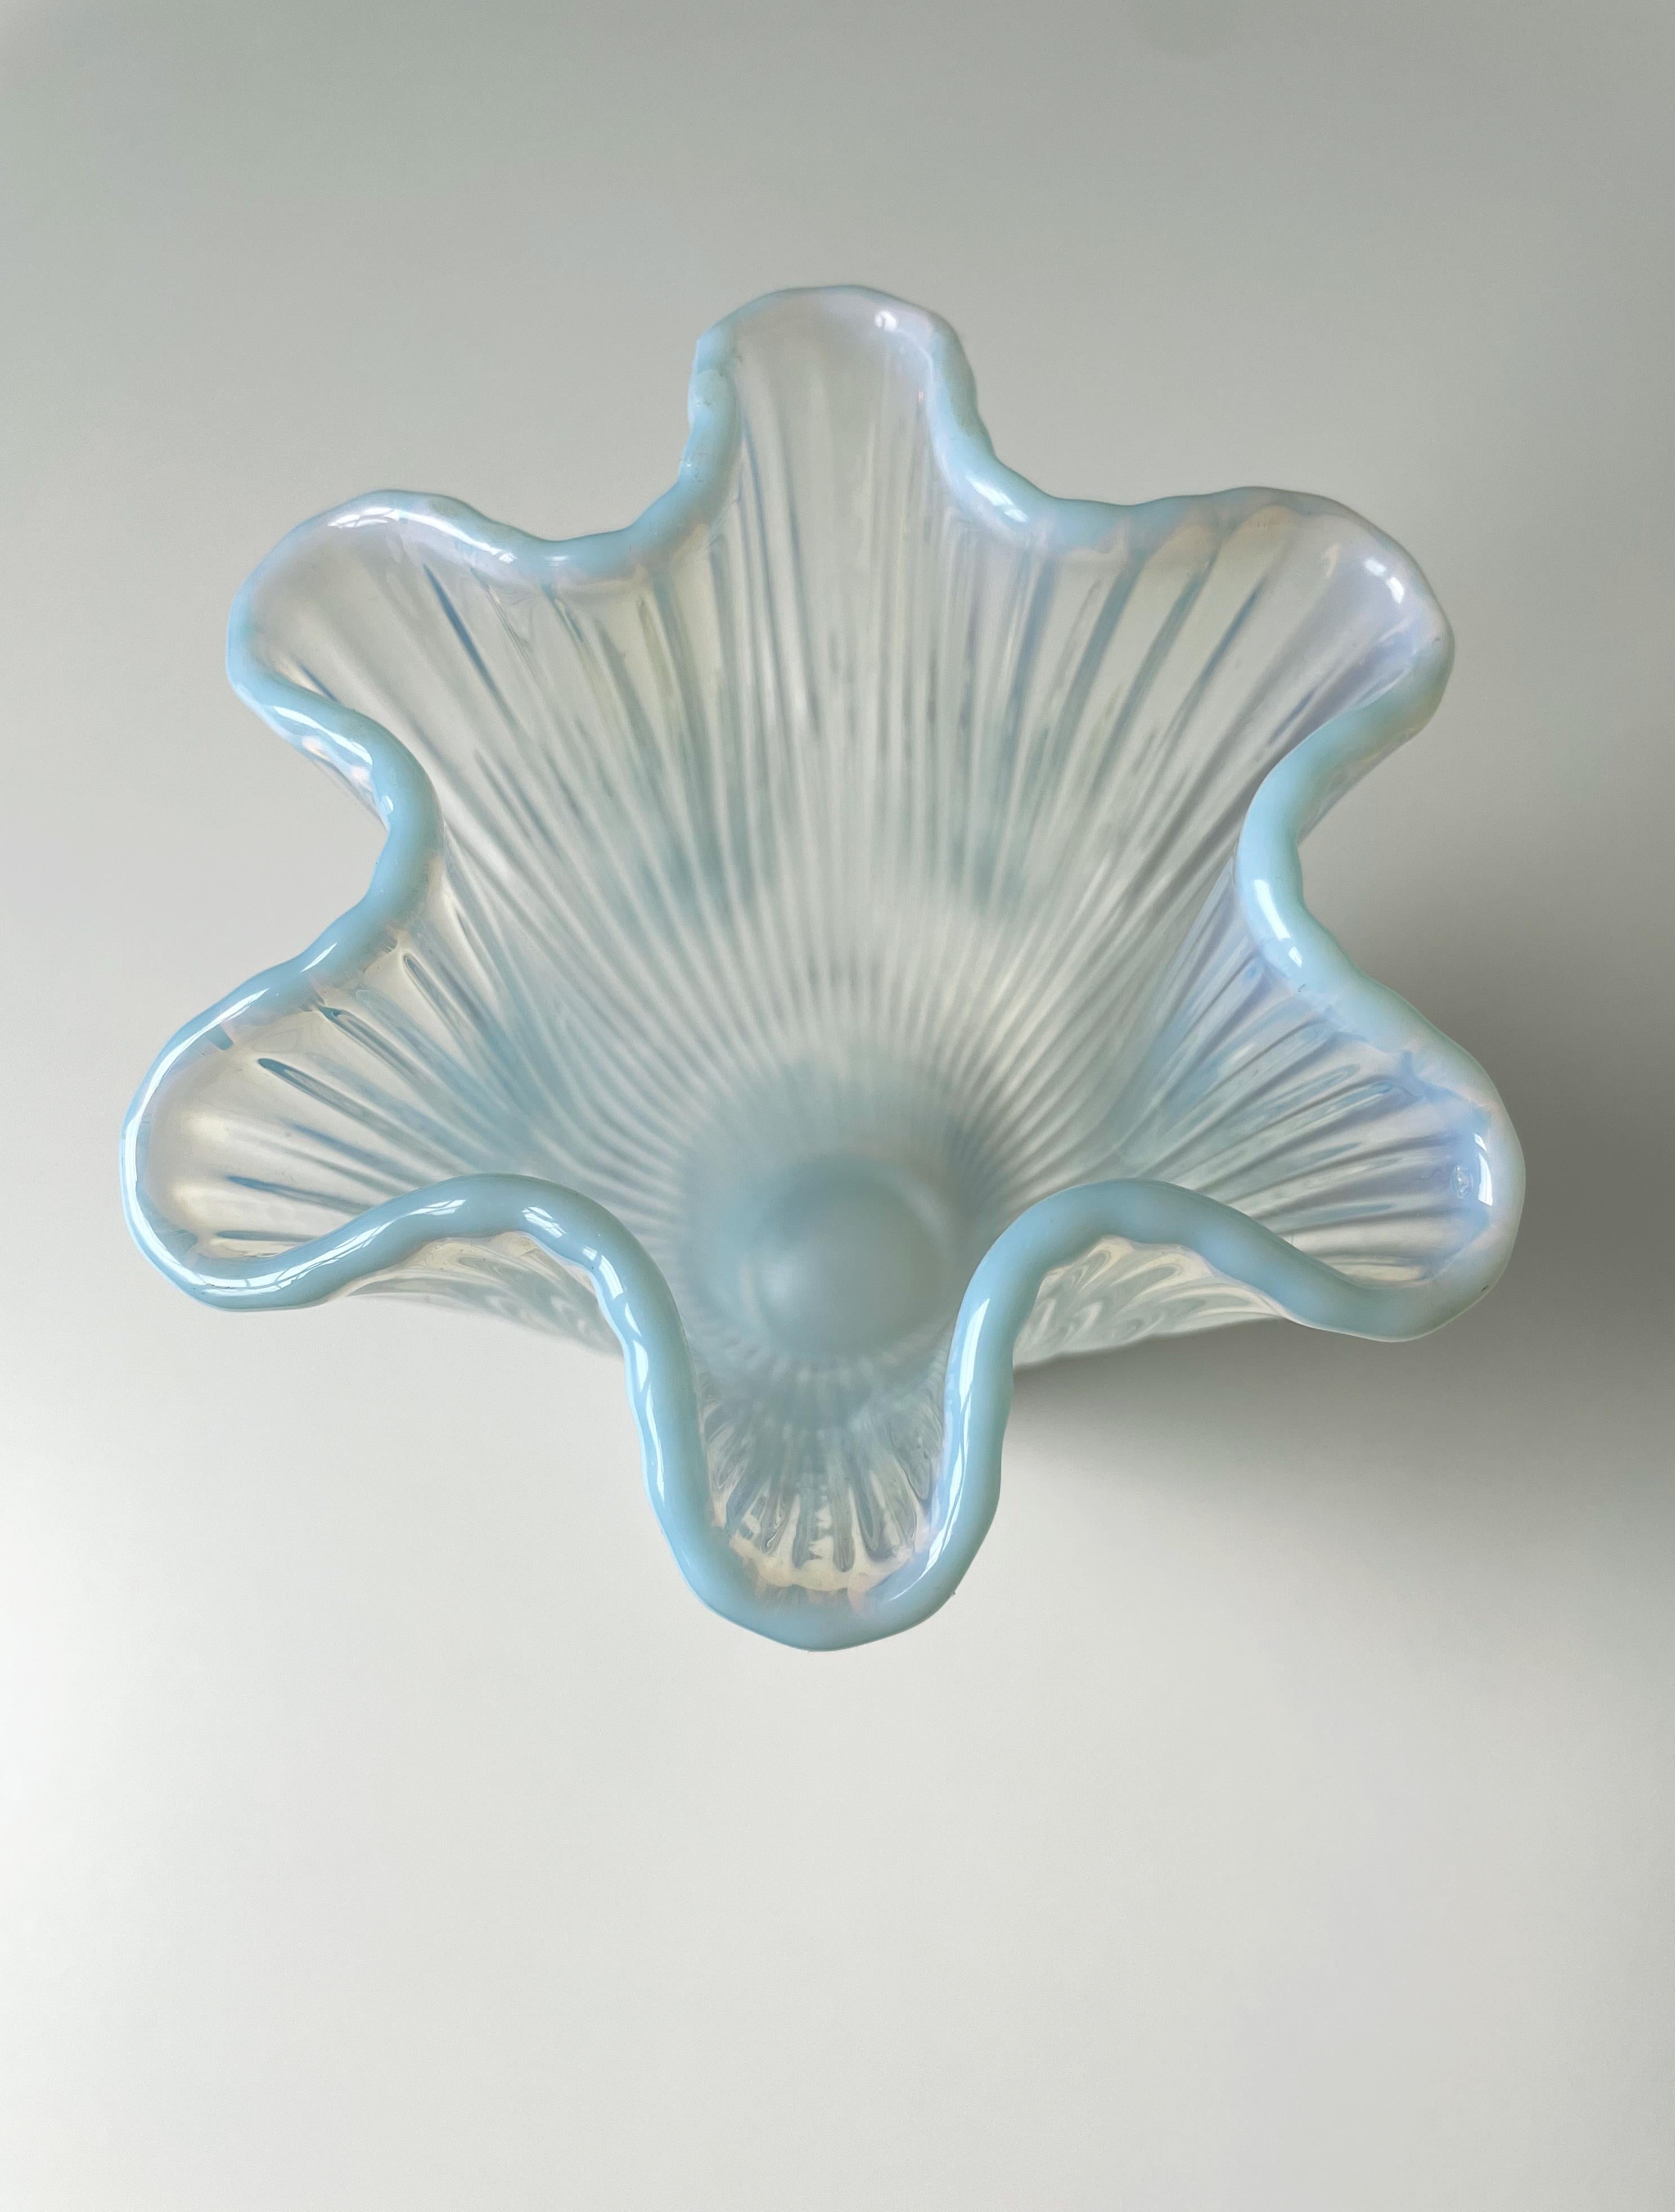 Zarte und exquisite mundgeblasene schwedische Kunstglasvase, entworfen von Arthur Percy für Gullaskrufs Glasbruk im Jahr 1952. Weißes und hellblaues, opalisierendes Glas bildet diese anmutige Vase mit dem Namen Reffla (Schweiz für Rillen) – das